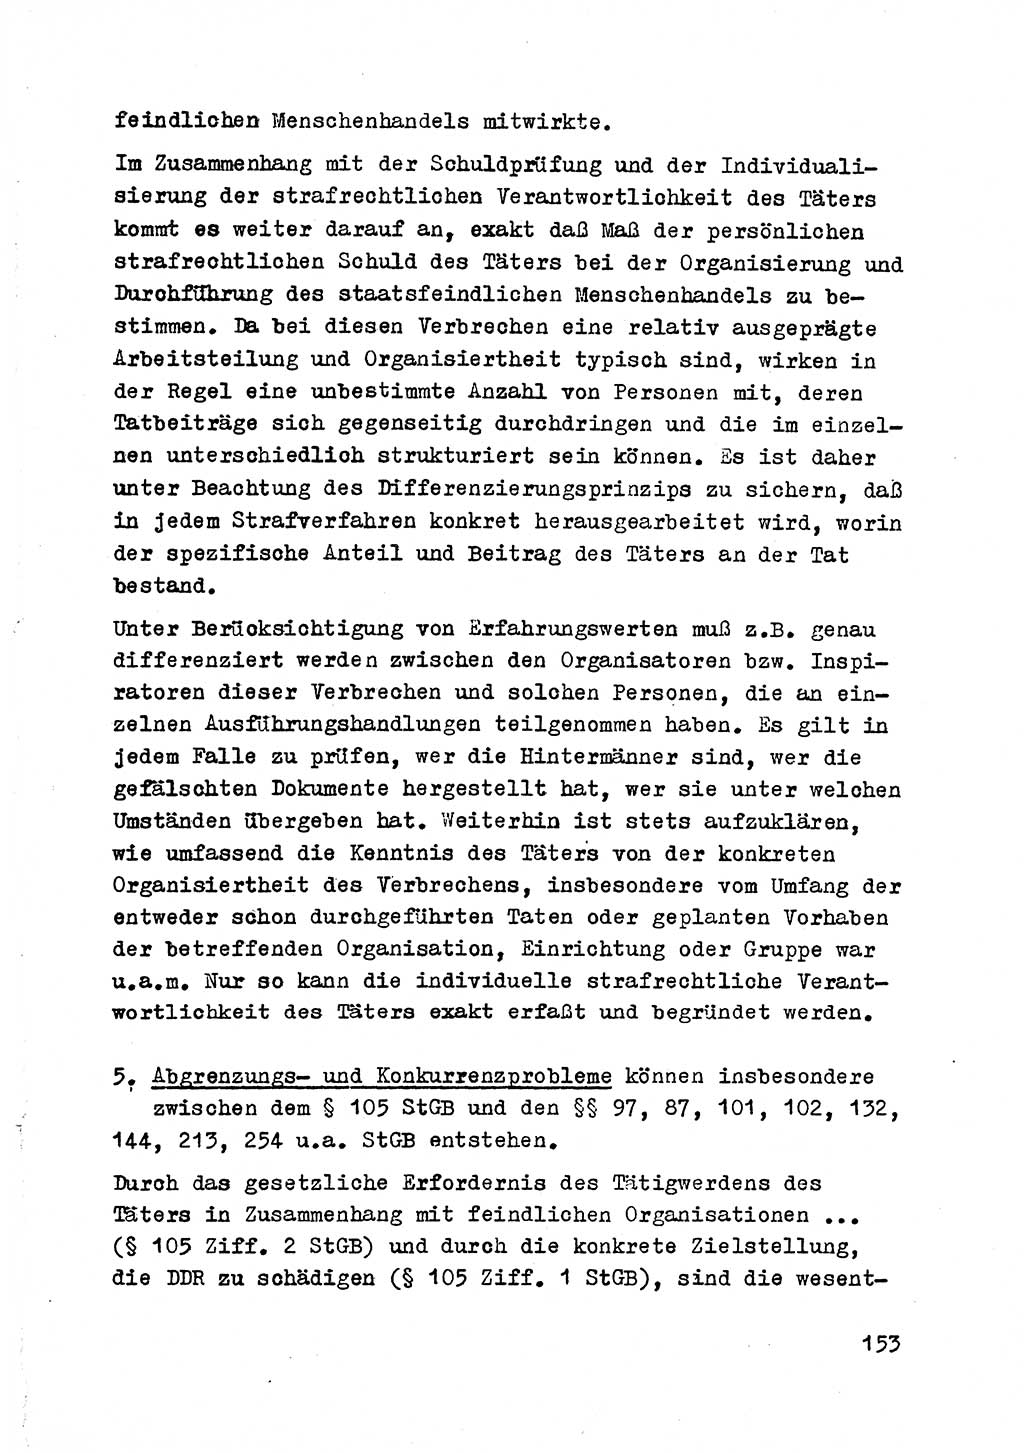 Strafrecht der DDR (Deutsche Demokratische Republik), Besonderer Teil, Lehrmaterial, Heft 2 1969, Seite 153 (Strafr. DDR BT Lehrmat. H. 2 1969, S. 153)